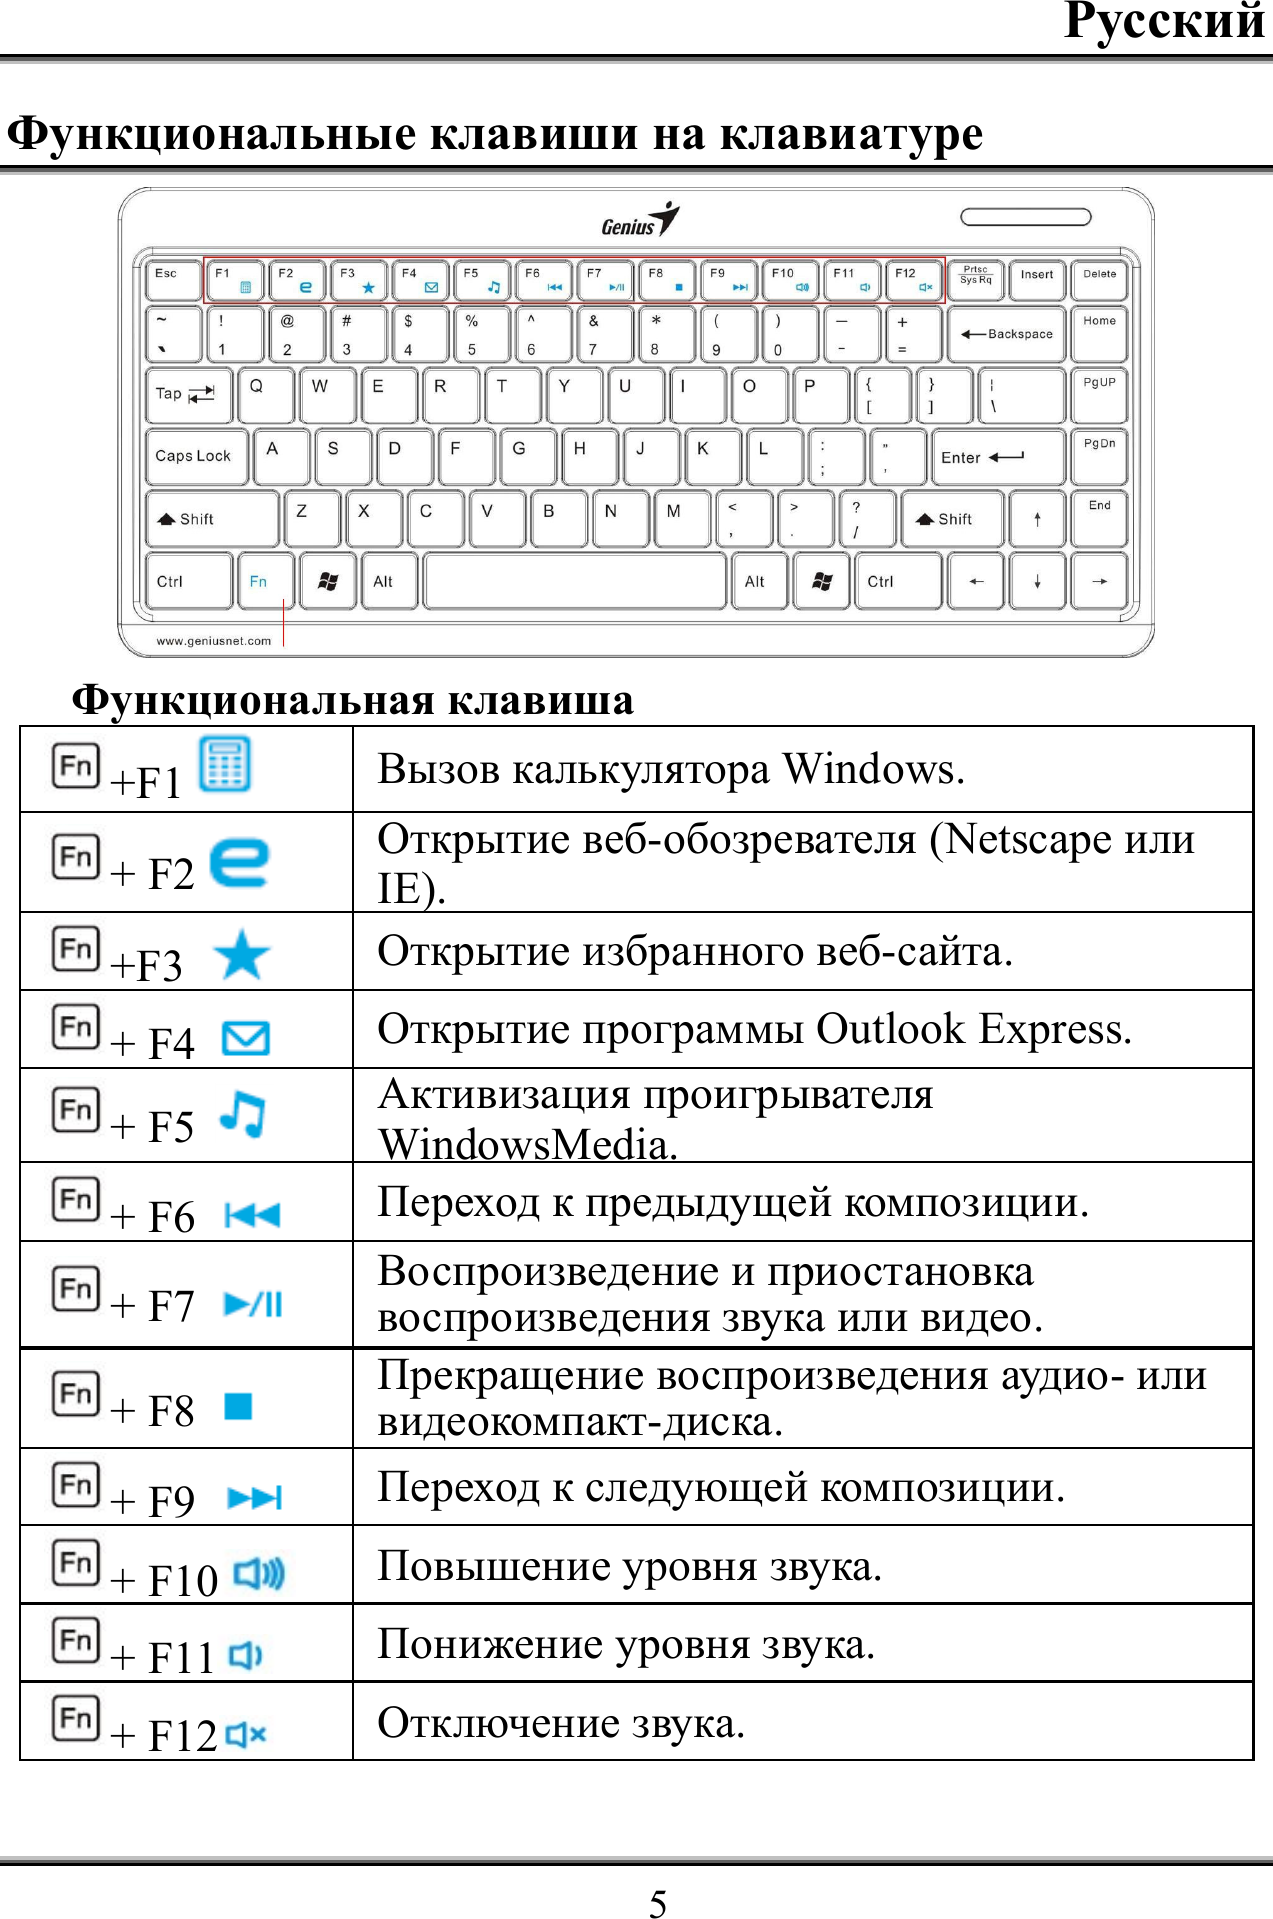 Функции клавиш. Функциональные клавиши на клавиатуре. Обозначение клавиш на клавиатуре. Обозначение кнопок на клавиатуре компьютера. Клавиатура компьютера Назначение клавиш.